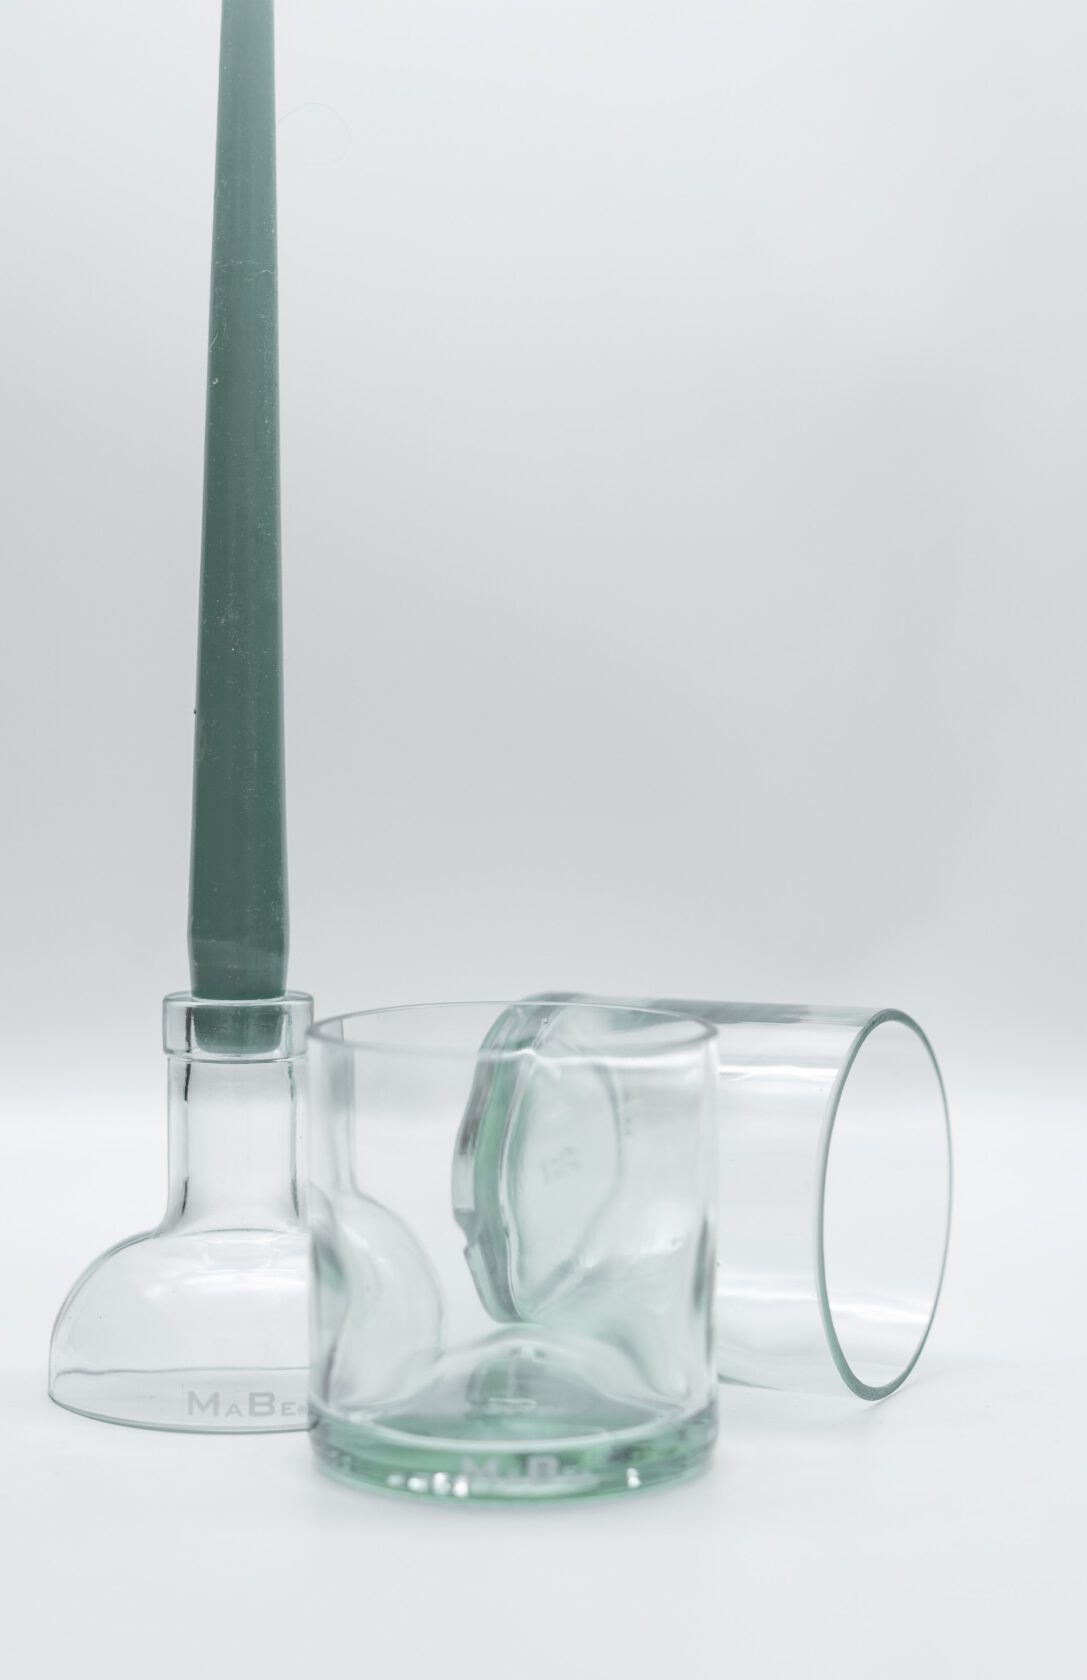 Sprirituosen Set - 2 Gläser und 1 Kerzenständer aus einer Flasche (inkl. 2 Kerzen)